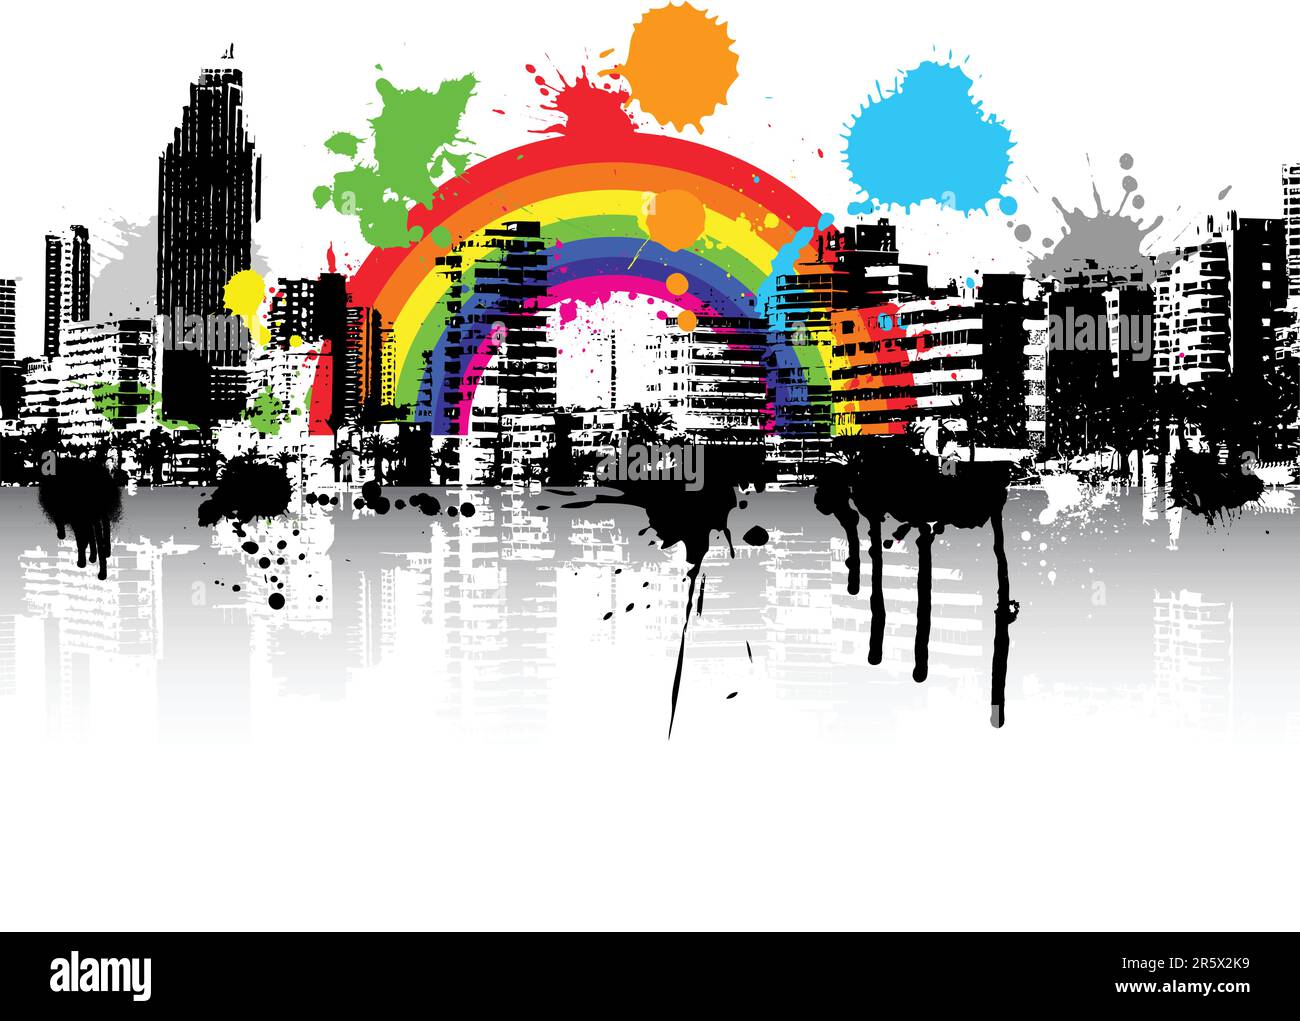 Style abstrait arrière-plan de la scène grunge urbain avec rainbow Illustration de Vecteur